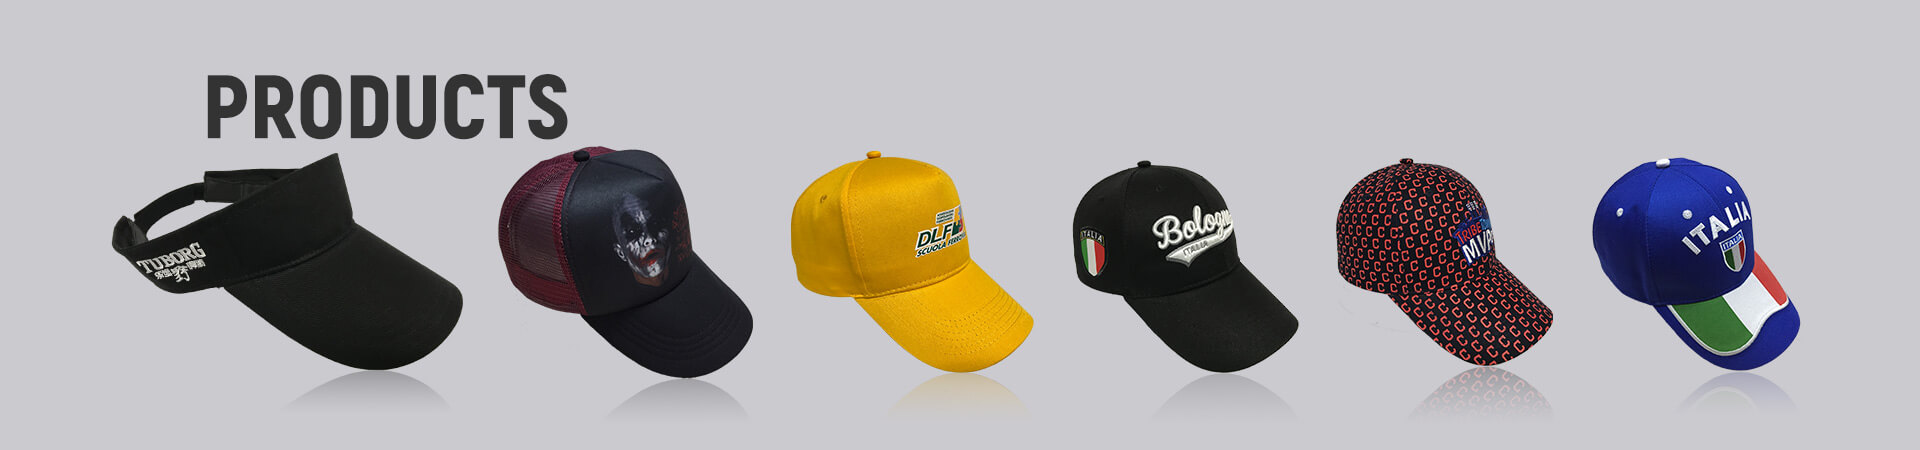 Parche bordado Archives - Gorra de béisbol, gorra deportiva, gorra de golf, gorra de pescador, gorra de camionero